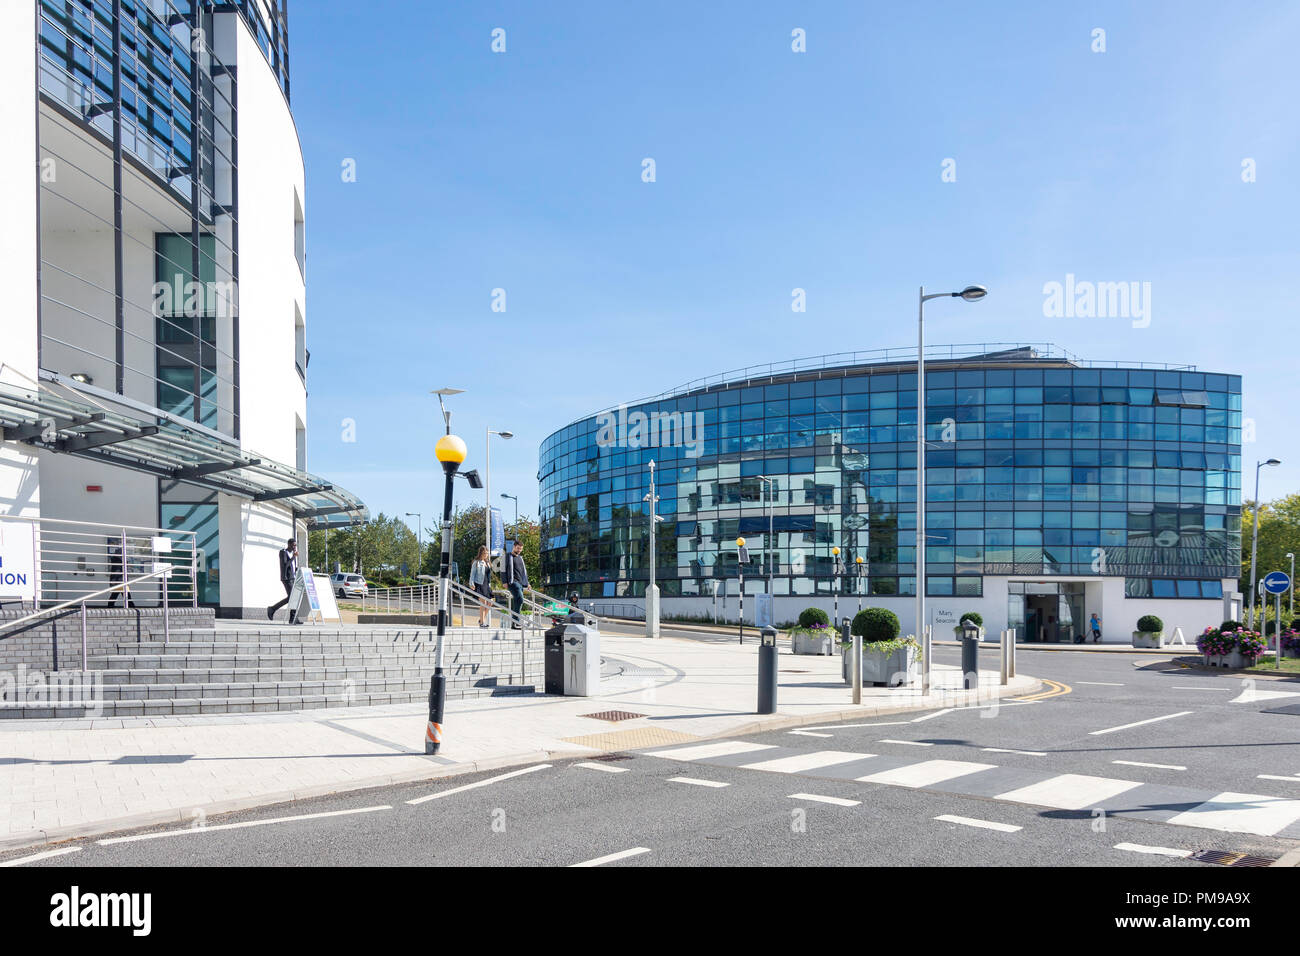 Eastern Gateway and Mary Seacole Buildings, Brunel University London, Uxbridge, London Borough of Hillingdon, Greater London, England, United Kingdom Stock Photo